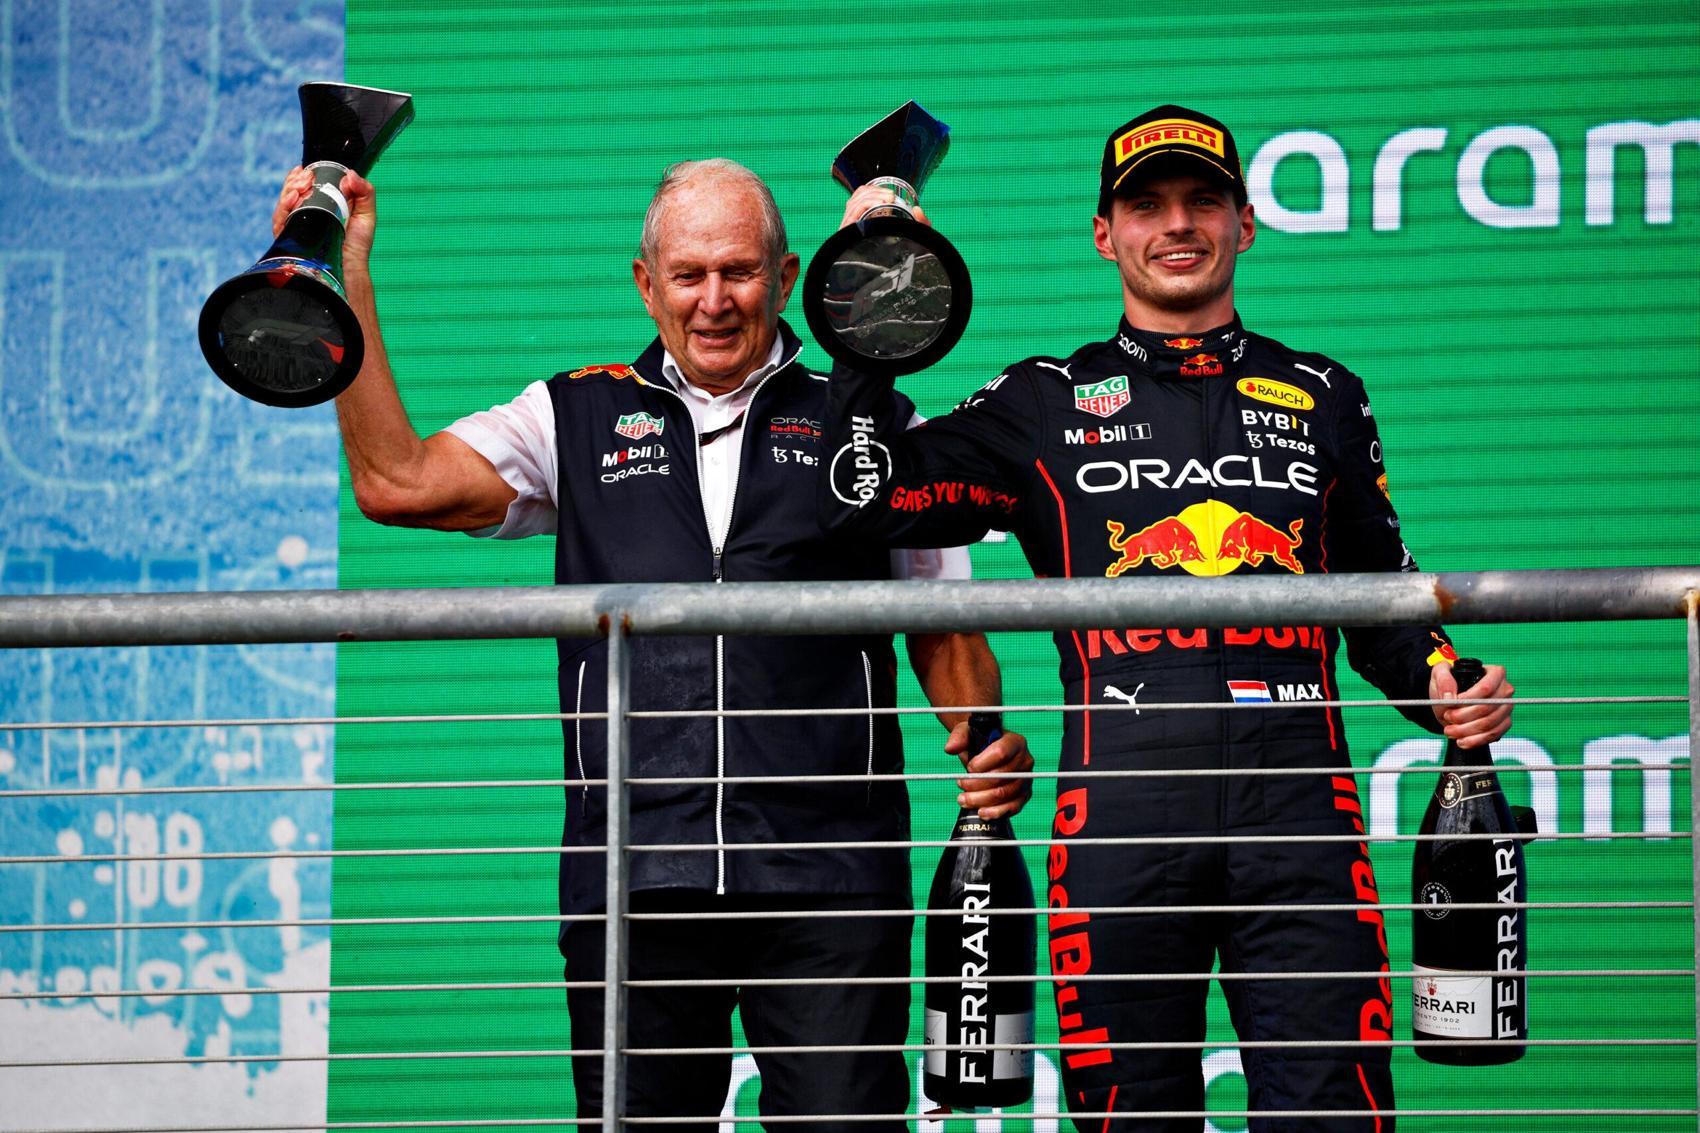 A Red Bull is világbajnok! – Amerikai Nagydíj összefoglaló